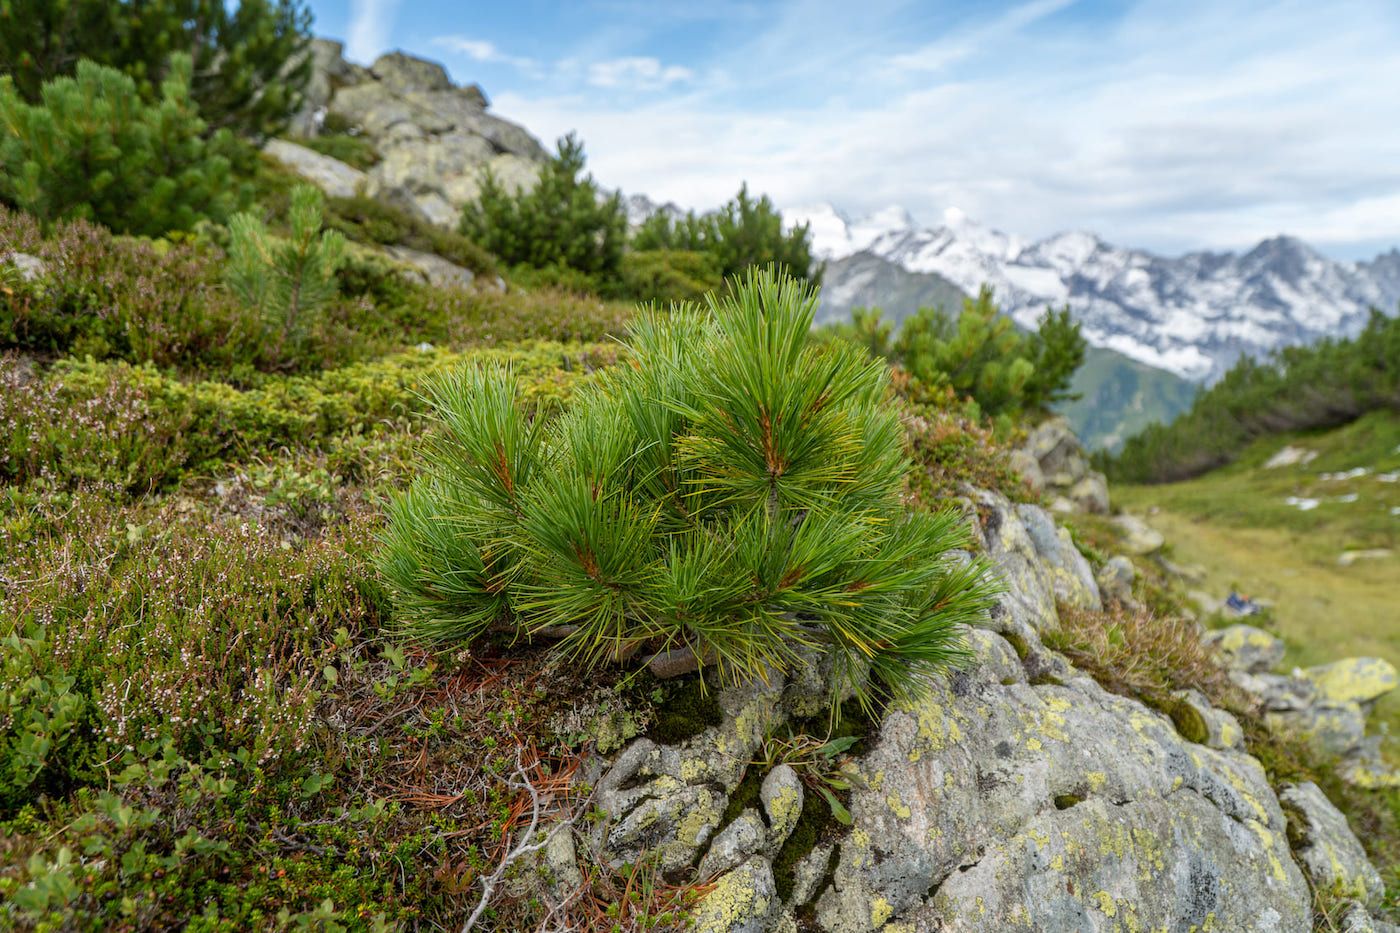 Jeune plant d'arole sur un rocher - Alpes suisses